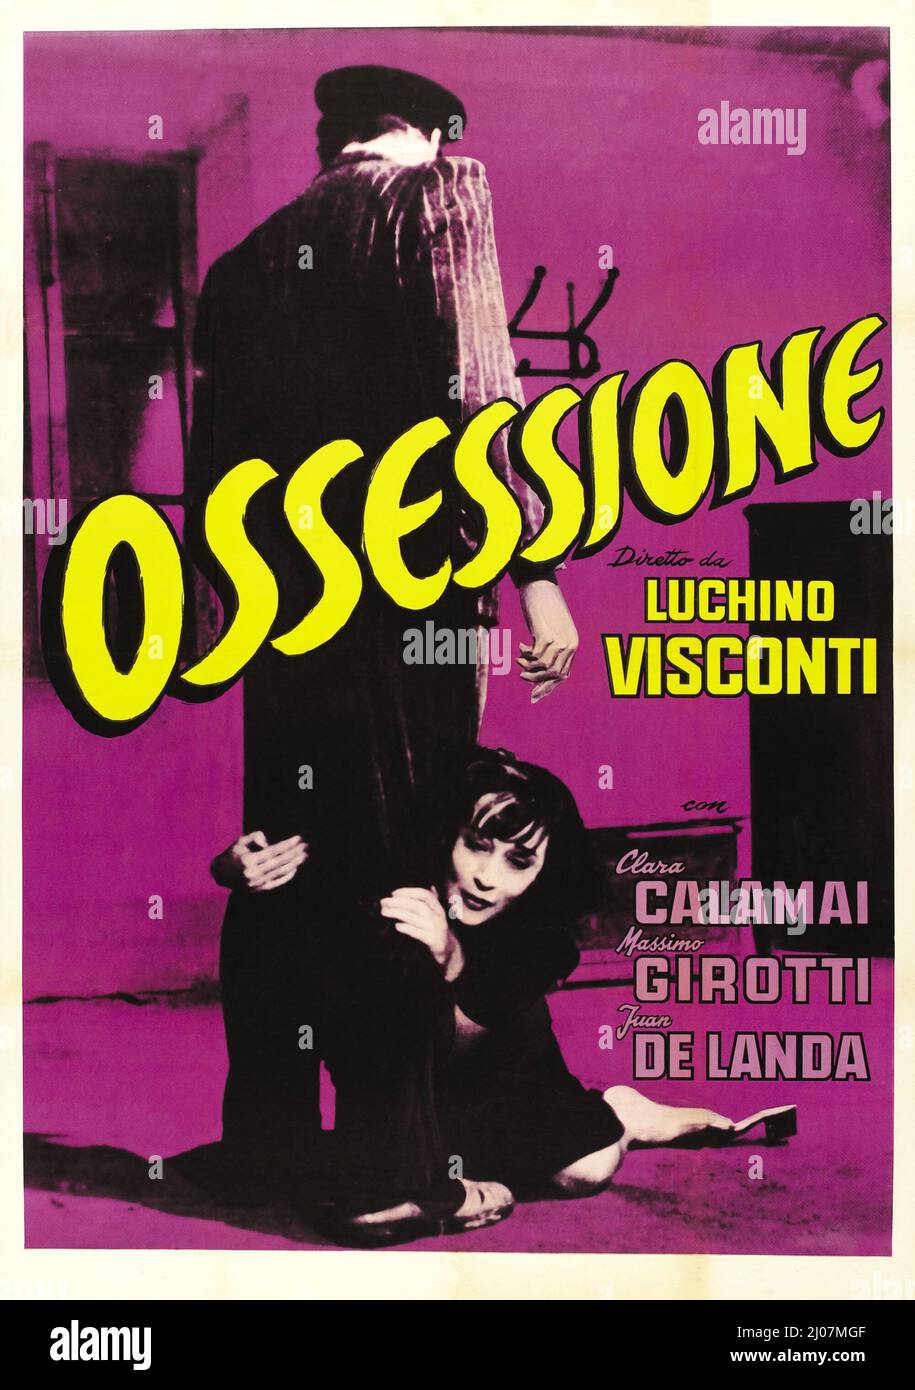 OSSESSIONE (1943), directed by LUCHINO VISCONTI. Credit: INDUSTRIA CINEMATOGRAFICA ITALIANA / Album Stock Photo